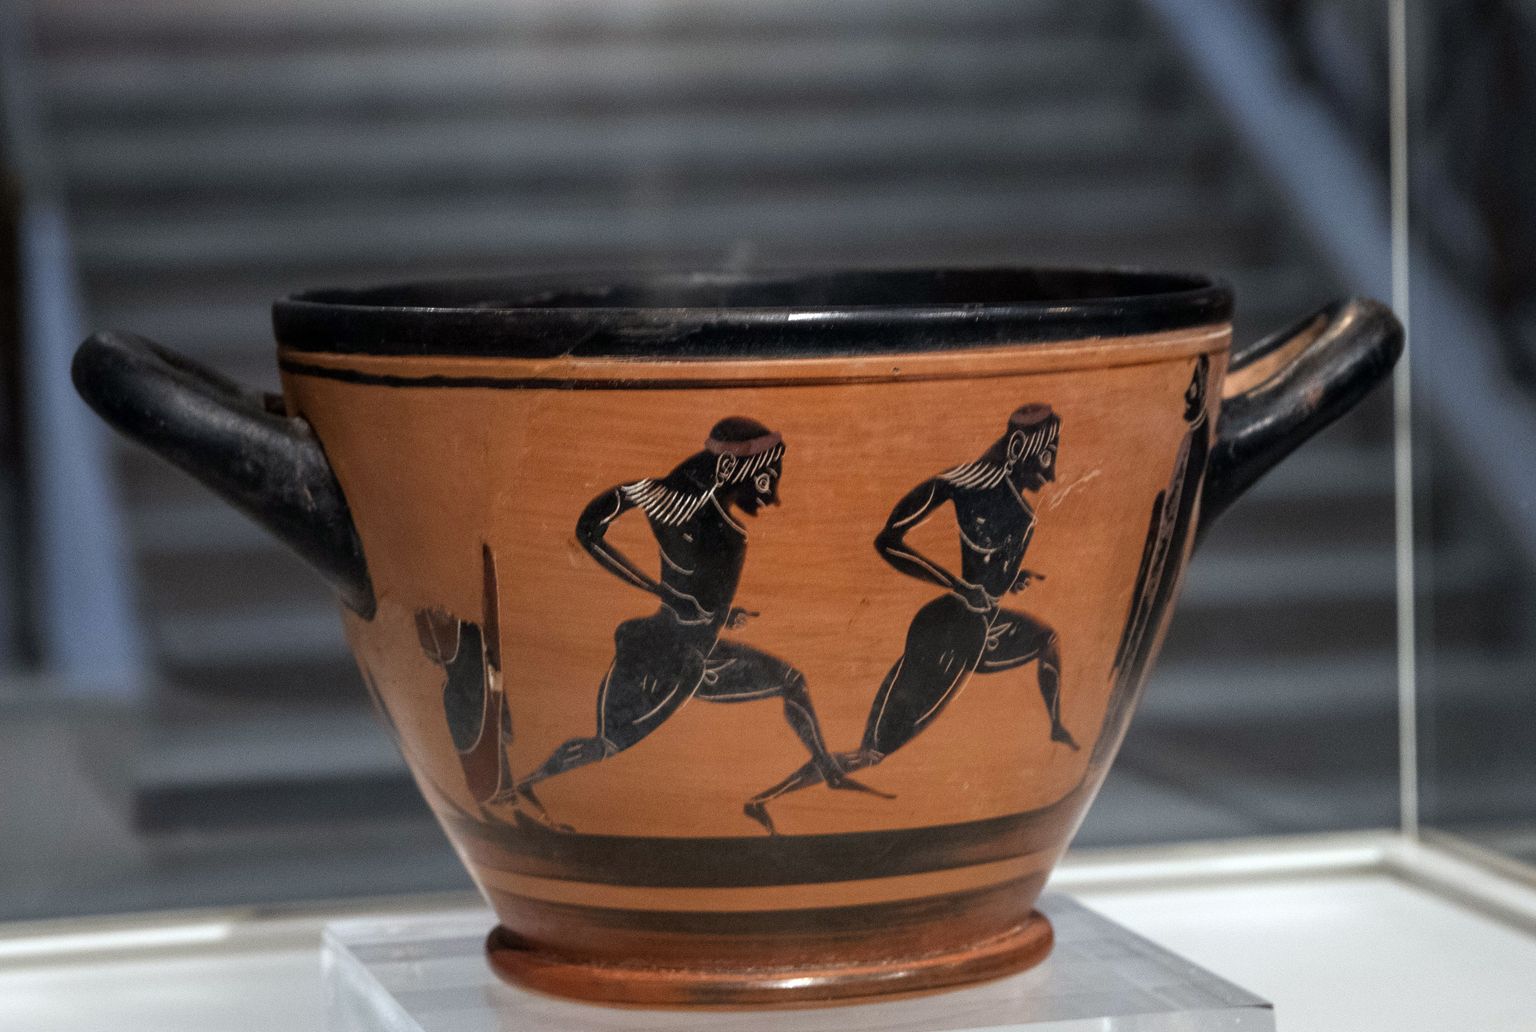 Vana-Kreeka joogianum, millel on kujutatud jooksjaid. See kingiti 1896 Ateenas esimesele tänapäevaste olümpiamängude  maratonivõitjale kreeklasele Spyros Louisile. Praegu on anum Ateenas rahvusmuuseumis